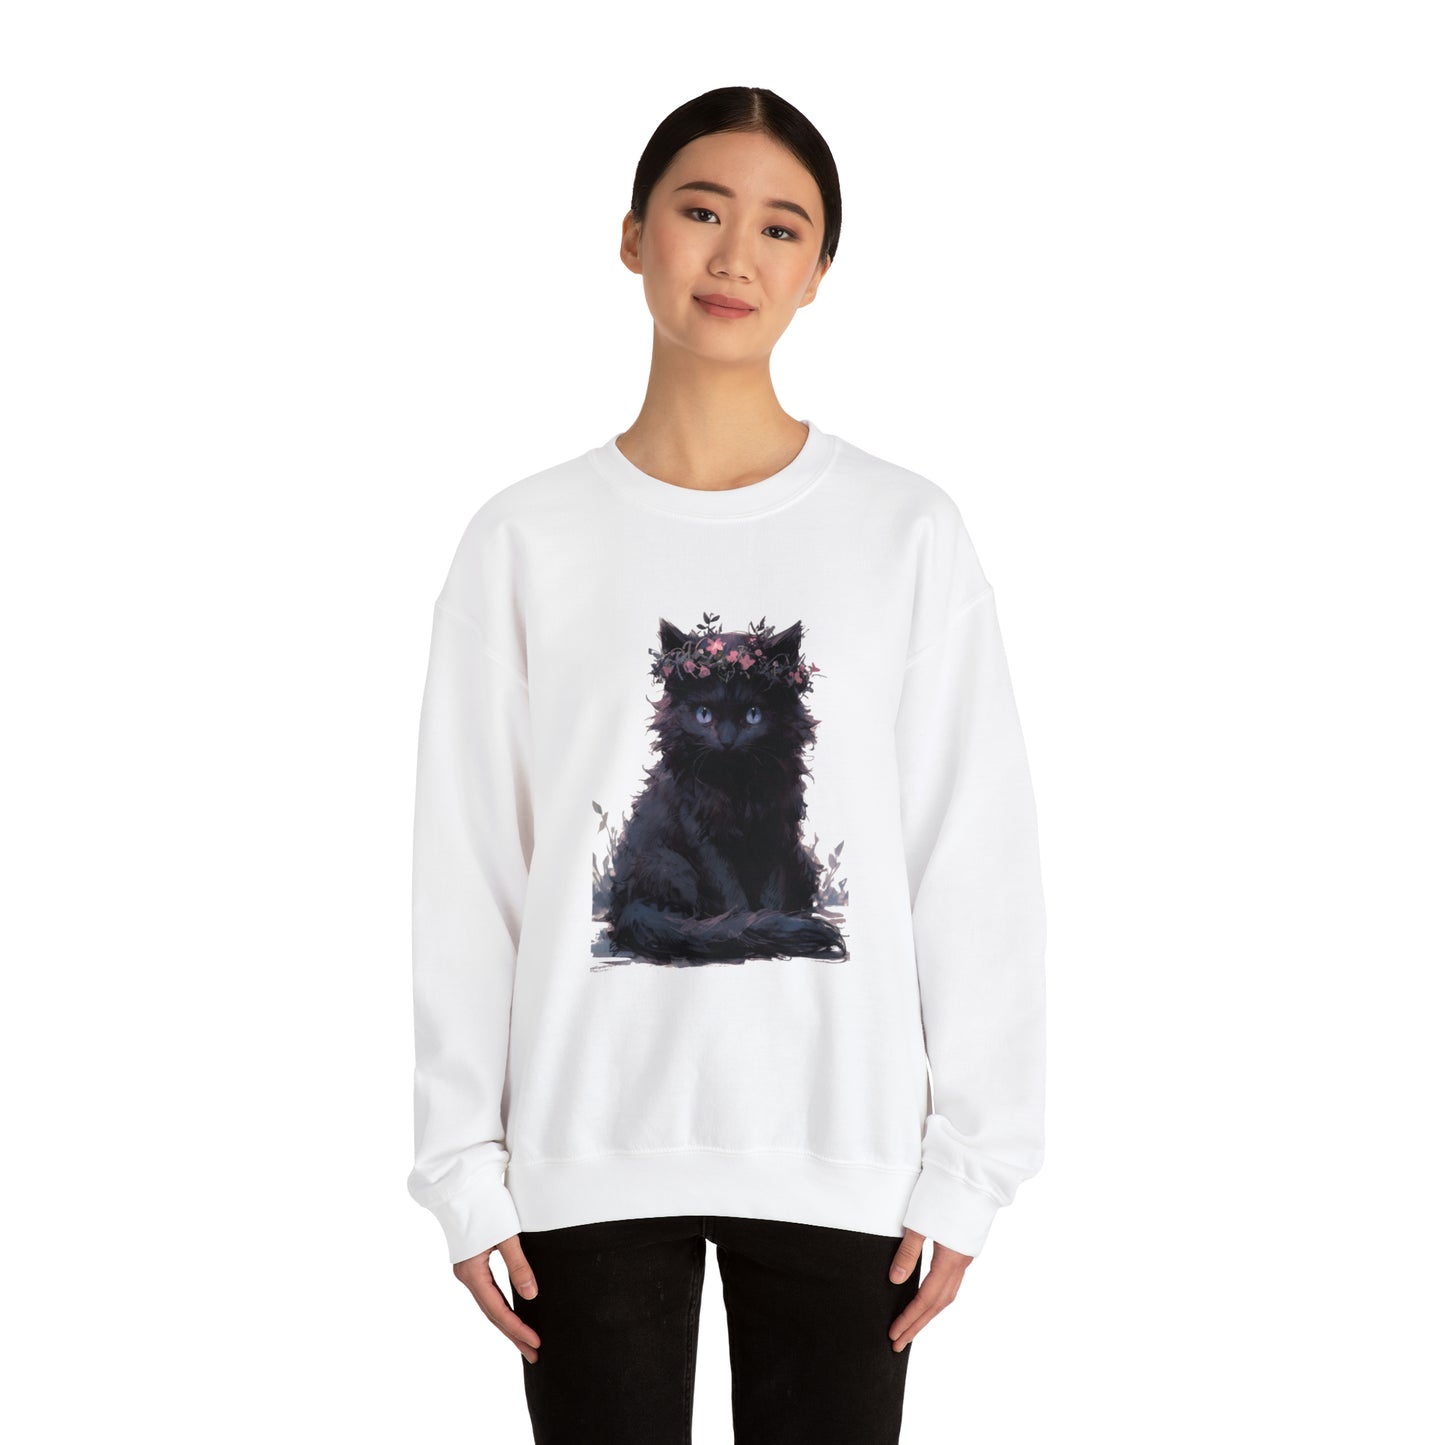 Cat, Black, Women's and Men's Unisex, Crew Neck Sweatshirt